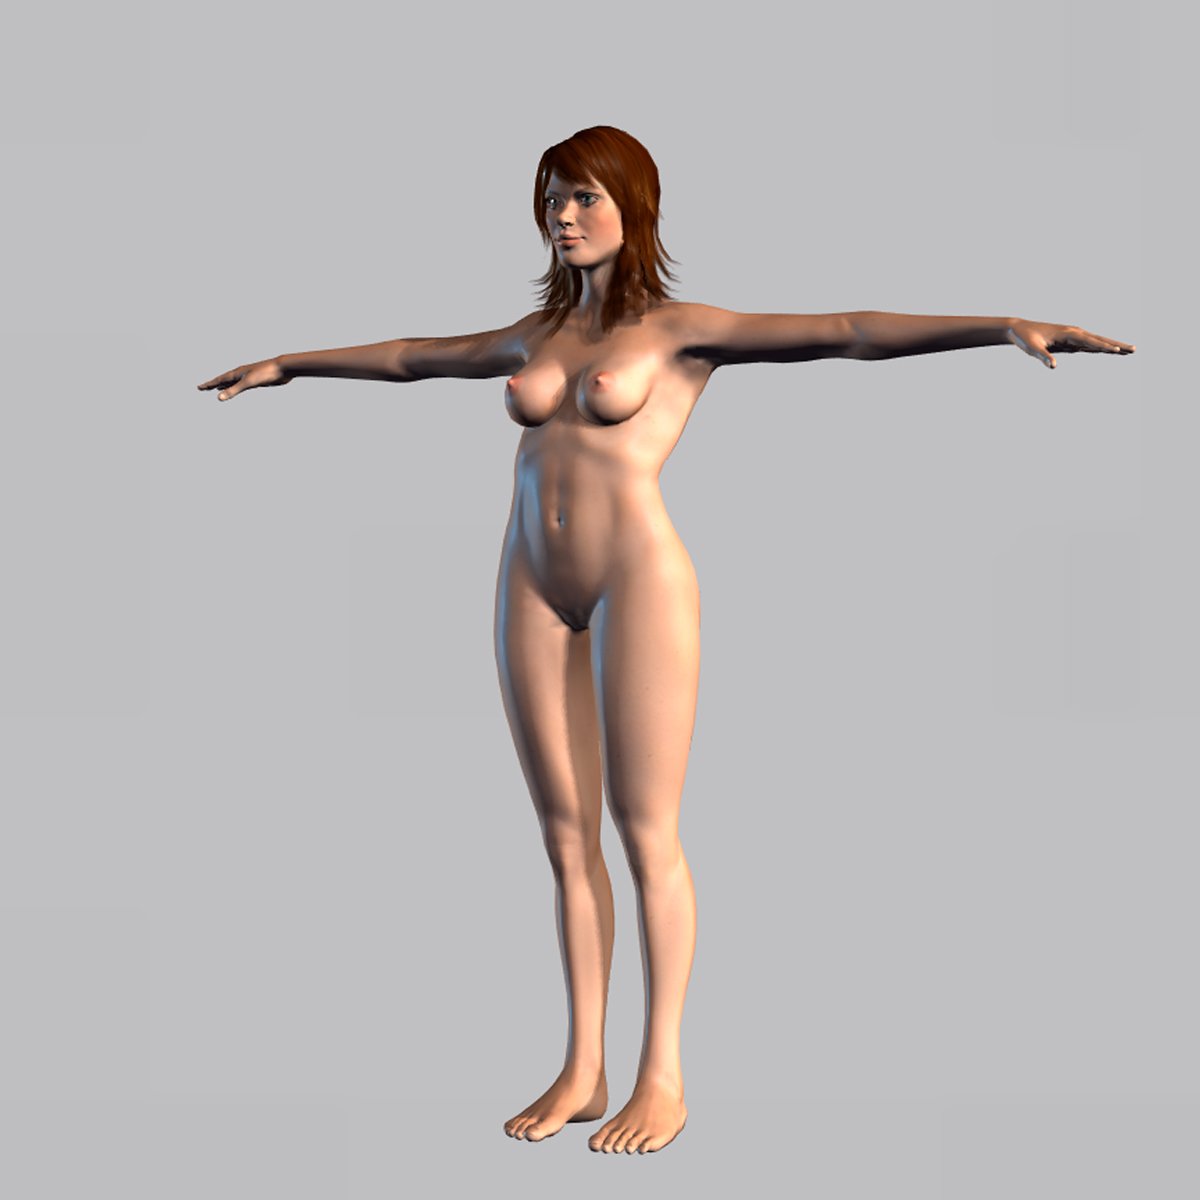 Animation naked women